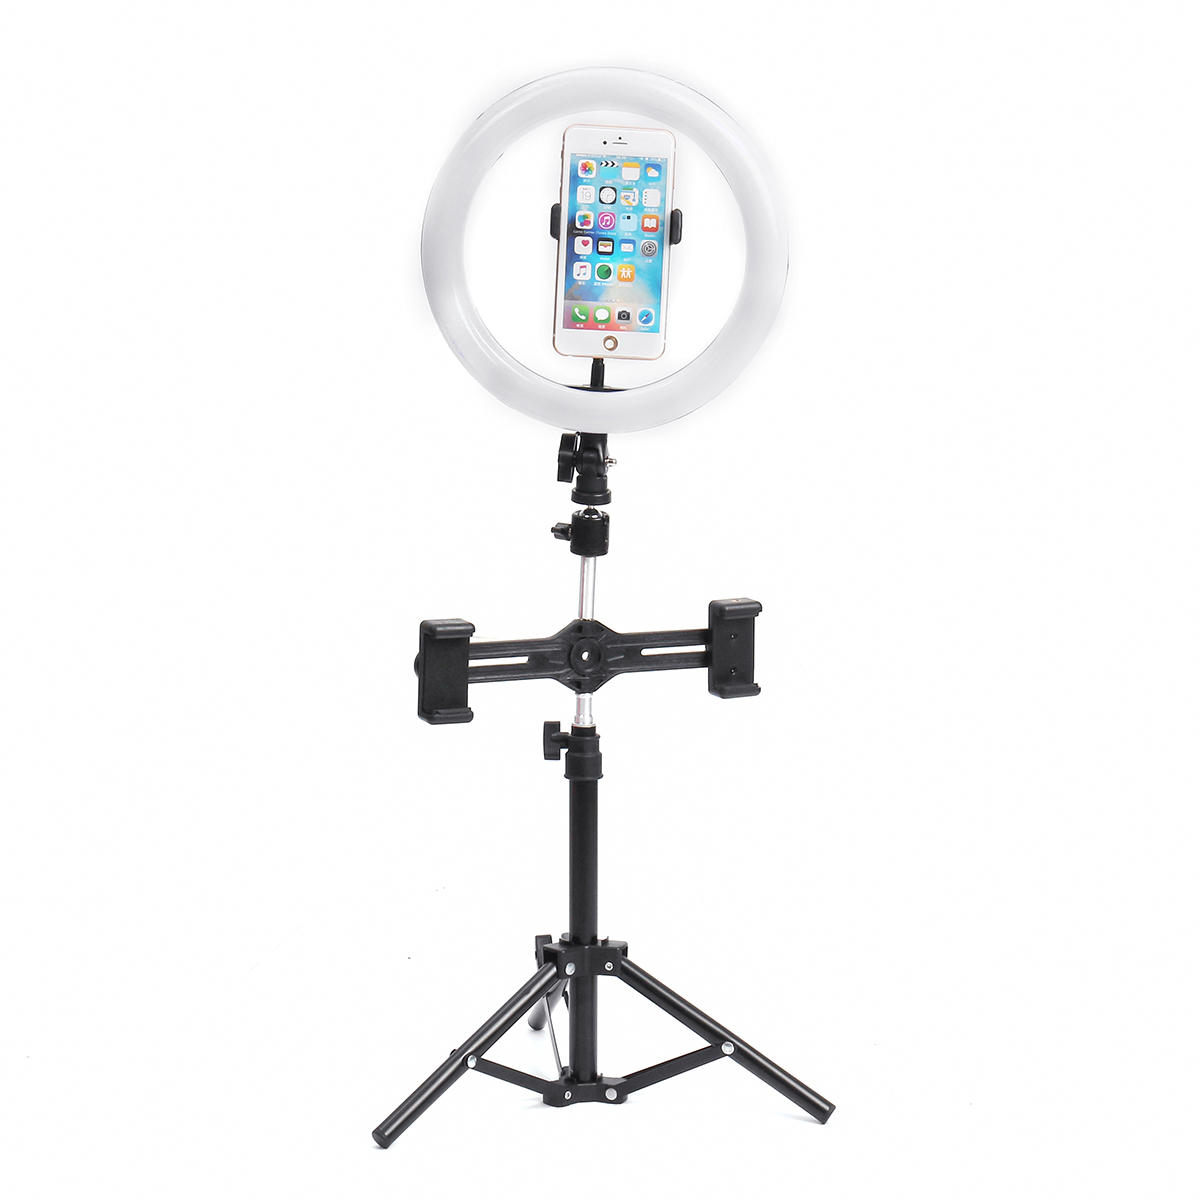 8 inch videofotografie Live streaming ringlicht met 50cm lichtstatief 3 telefoonclip